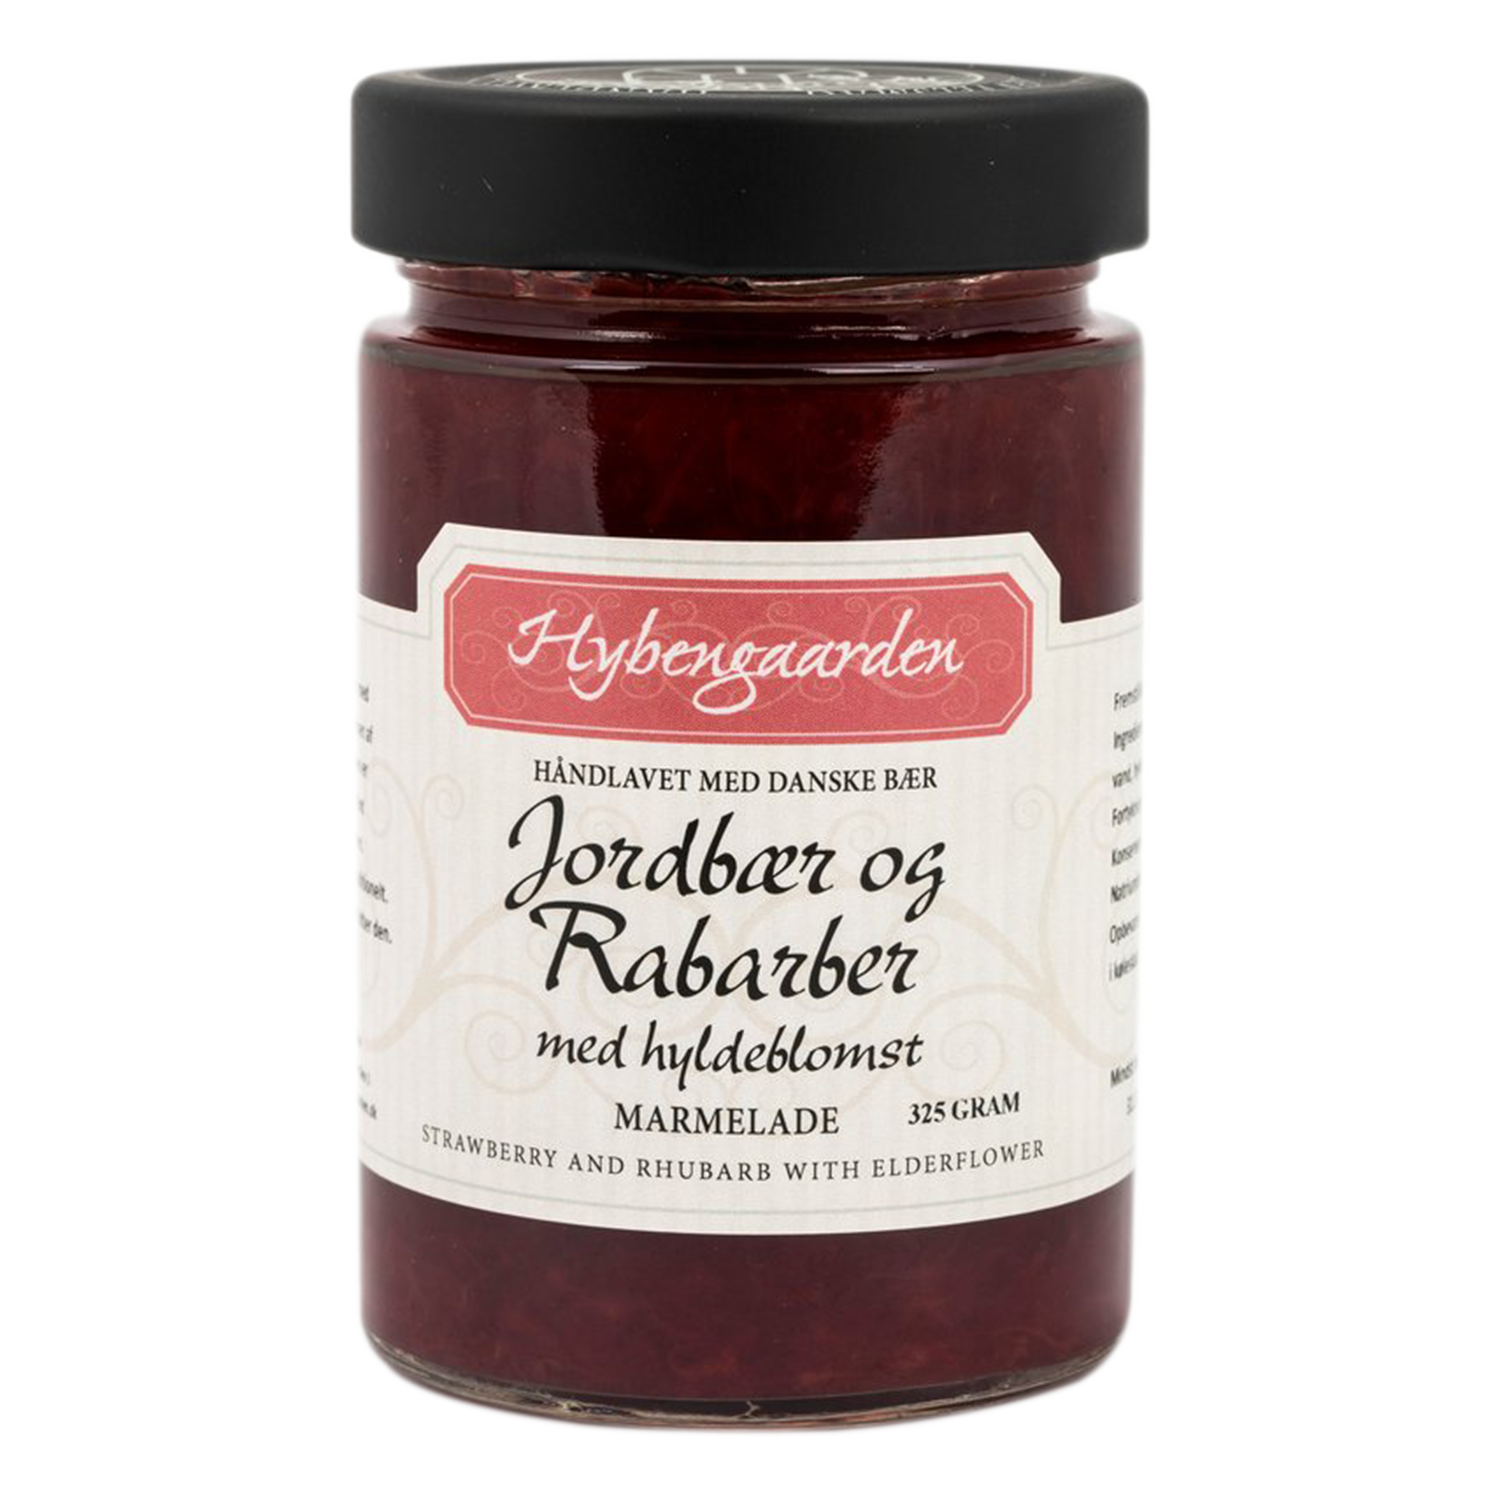 Jordbær/Rabarber/Hyldeblomst marmelade 325g